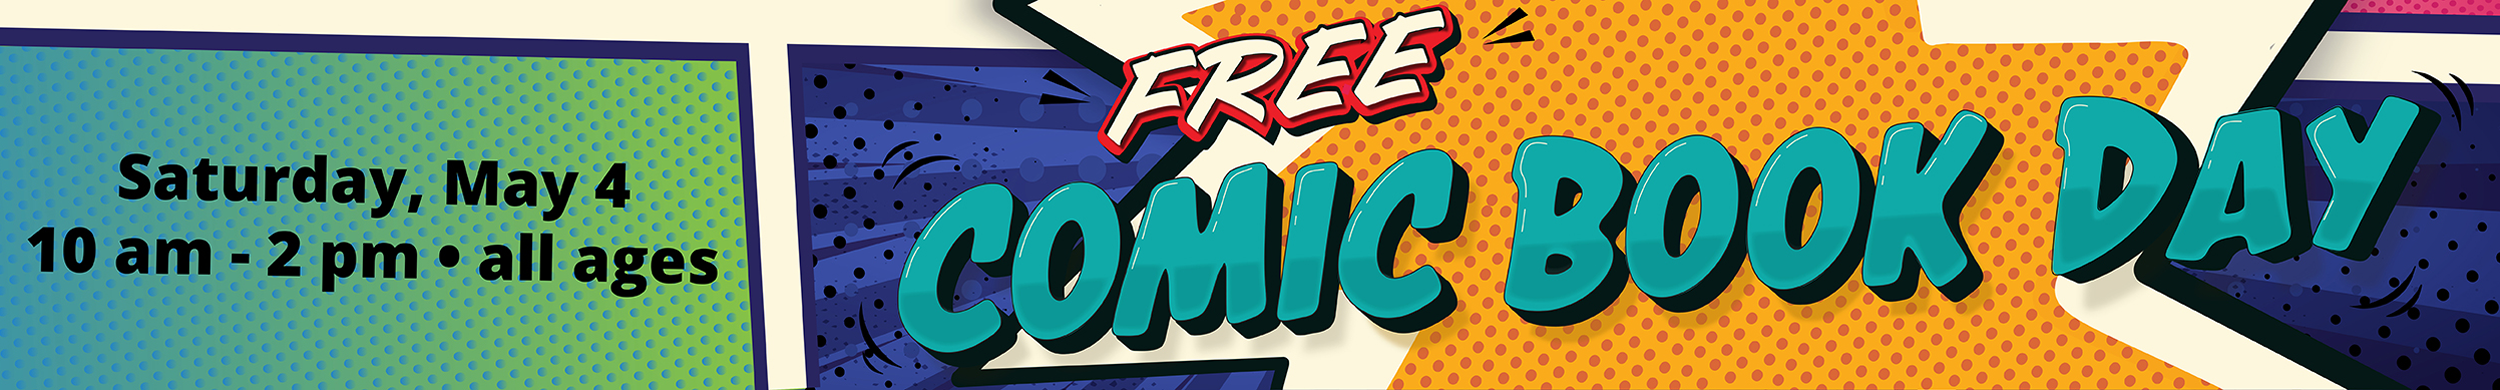 Free comic book day